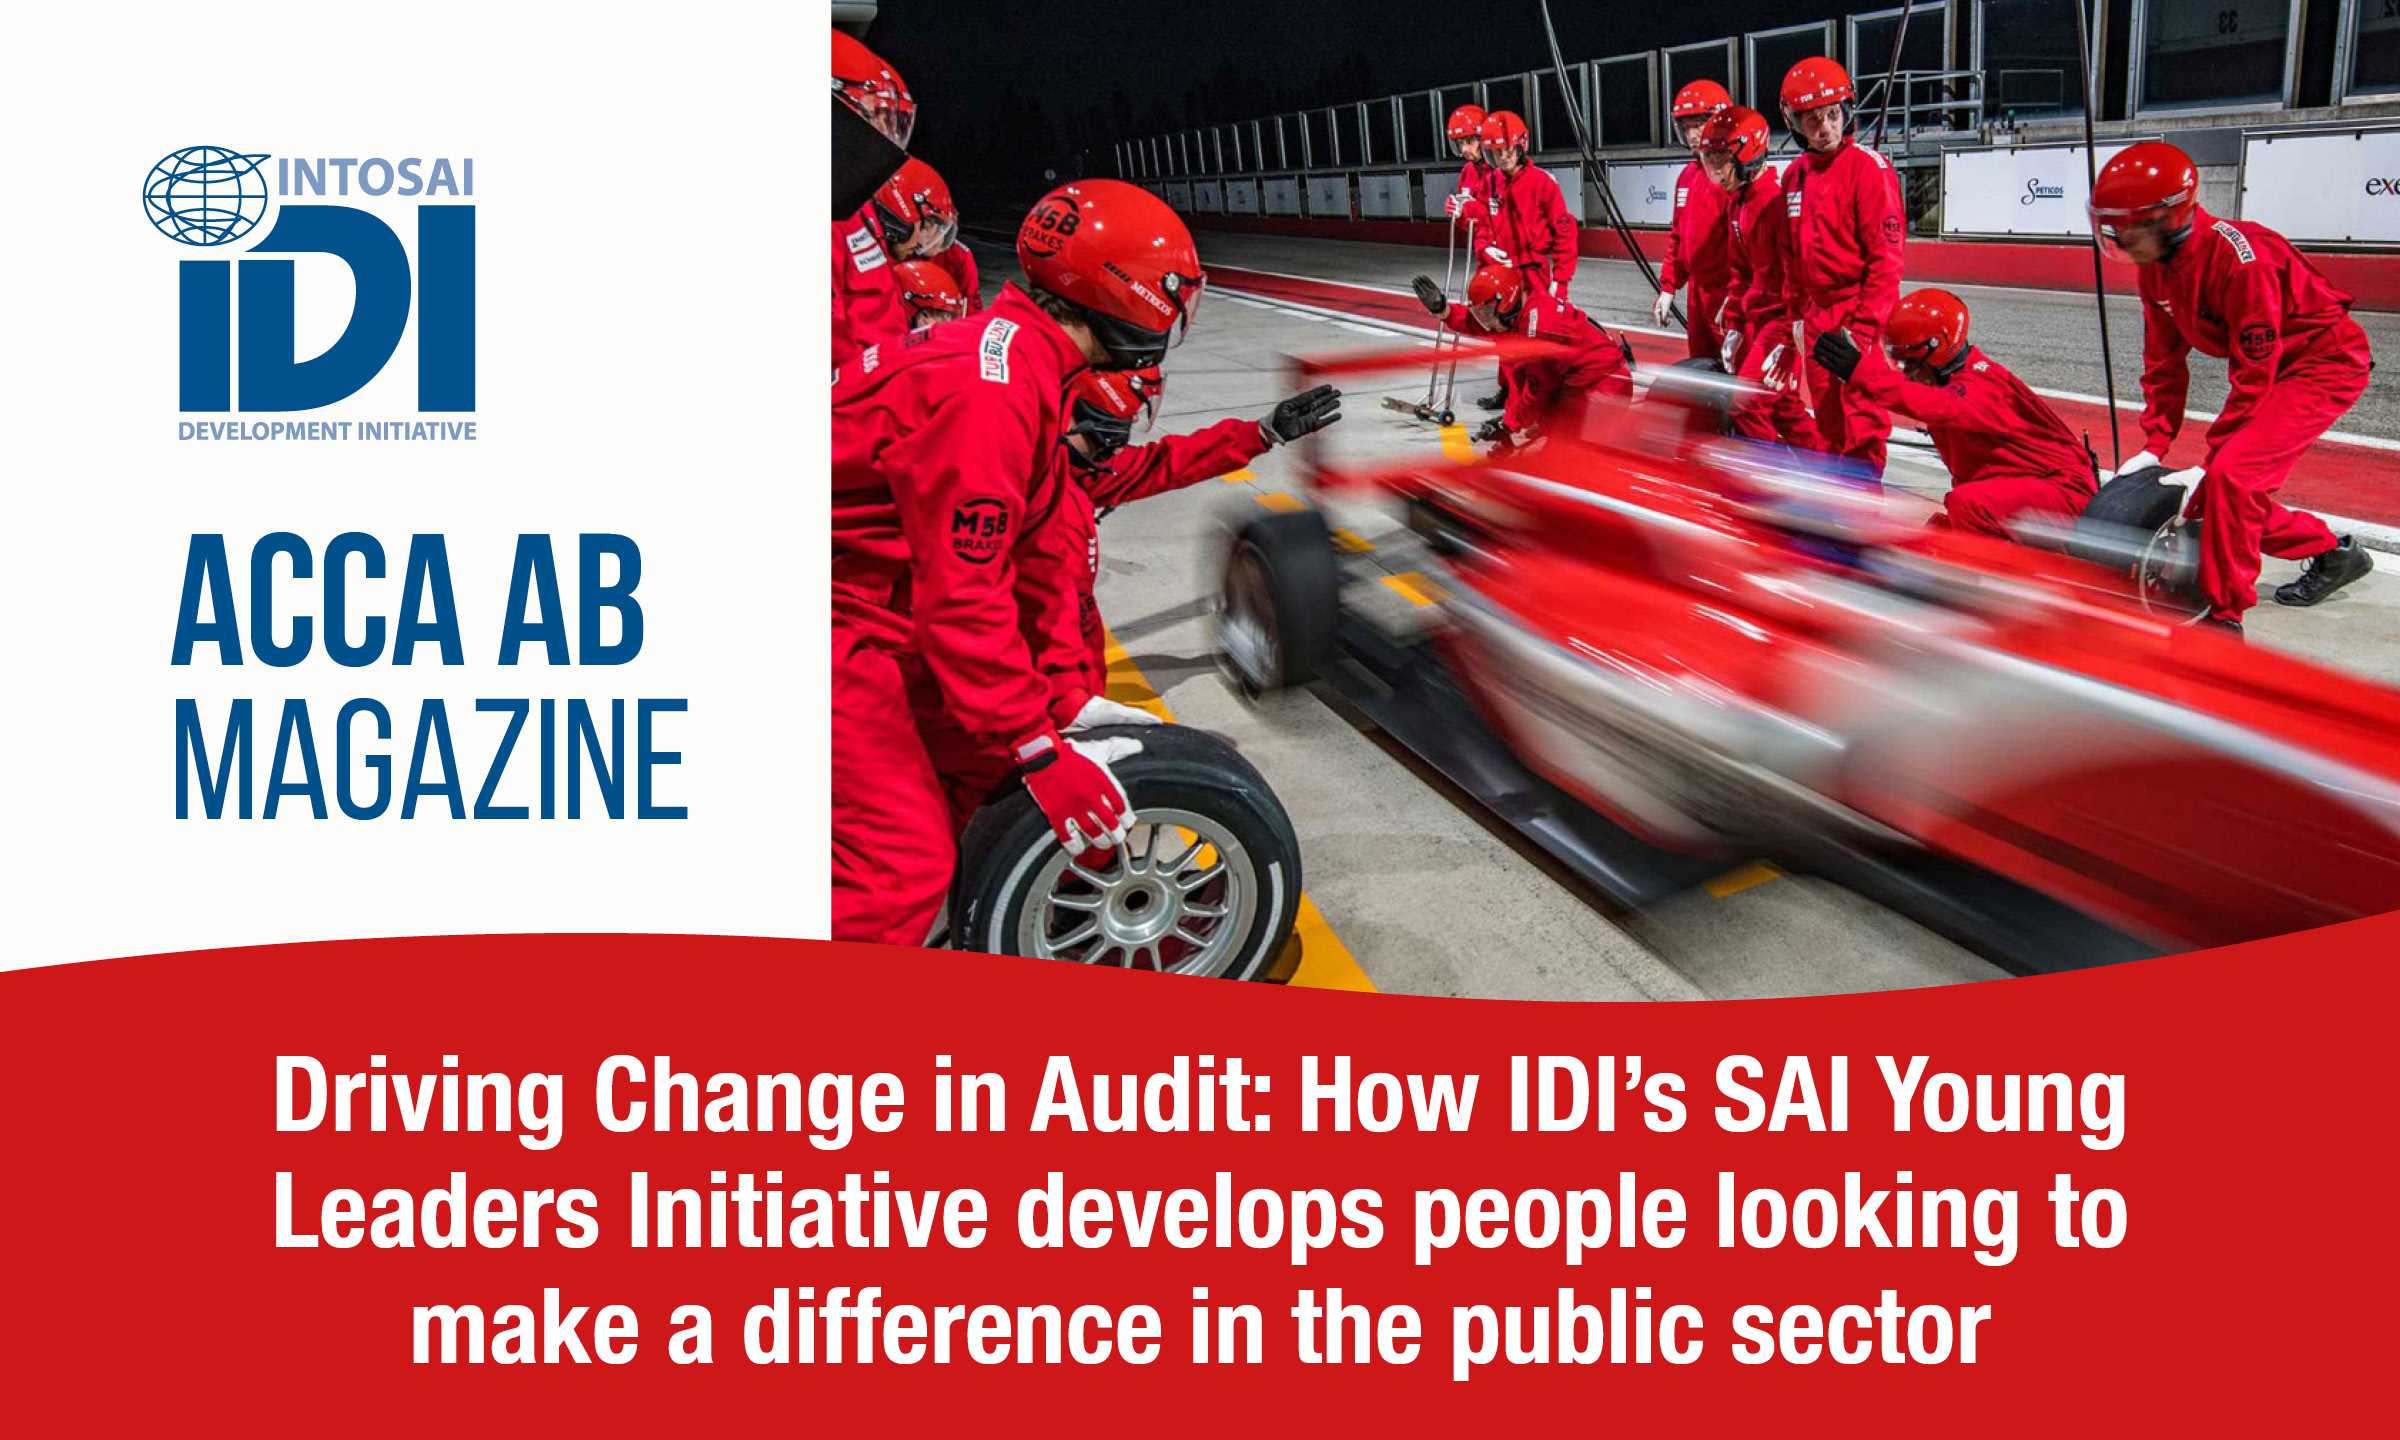 يدعم برنامج القادة الشباب لجهاز SAI التابع لـ IDI ميزات المدققين العامين في مجلة AB التابعة لجمعية المحاسبين القانونيين المعتمدين (ACCA).